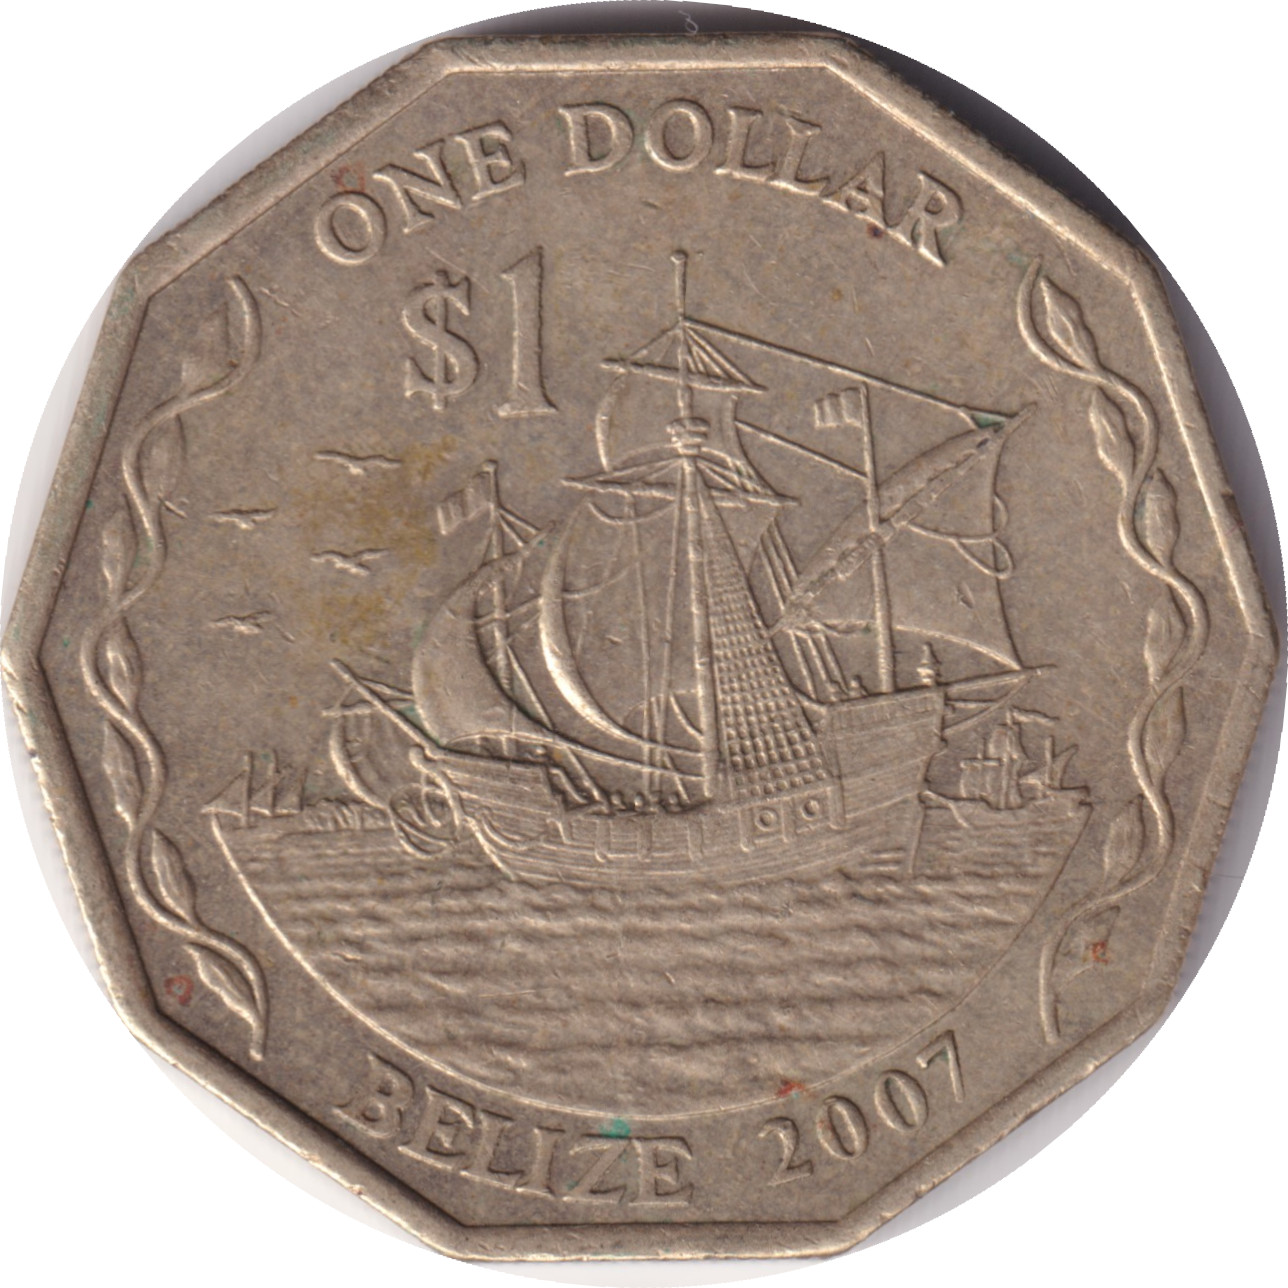 1 dollar - Elizabeth II